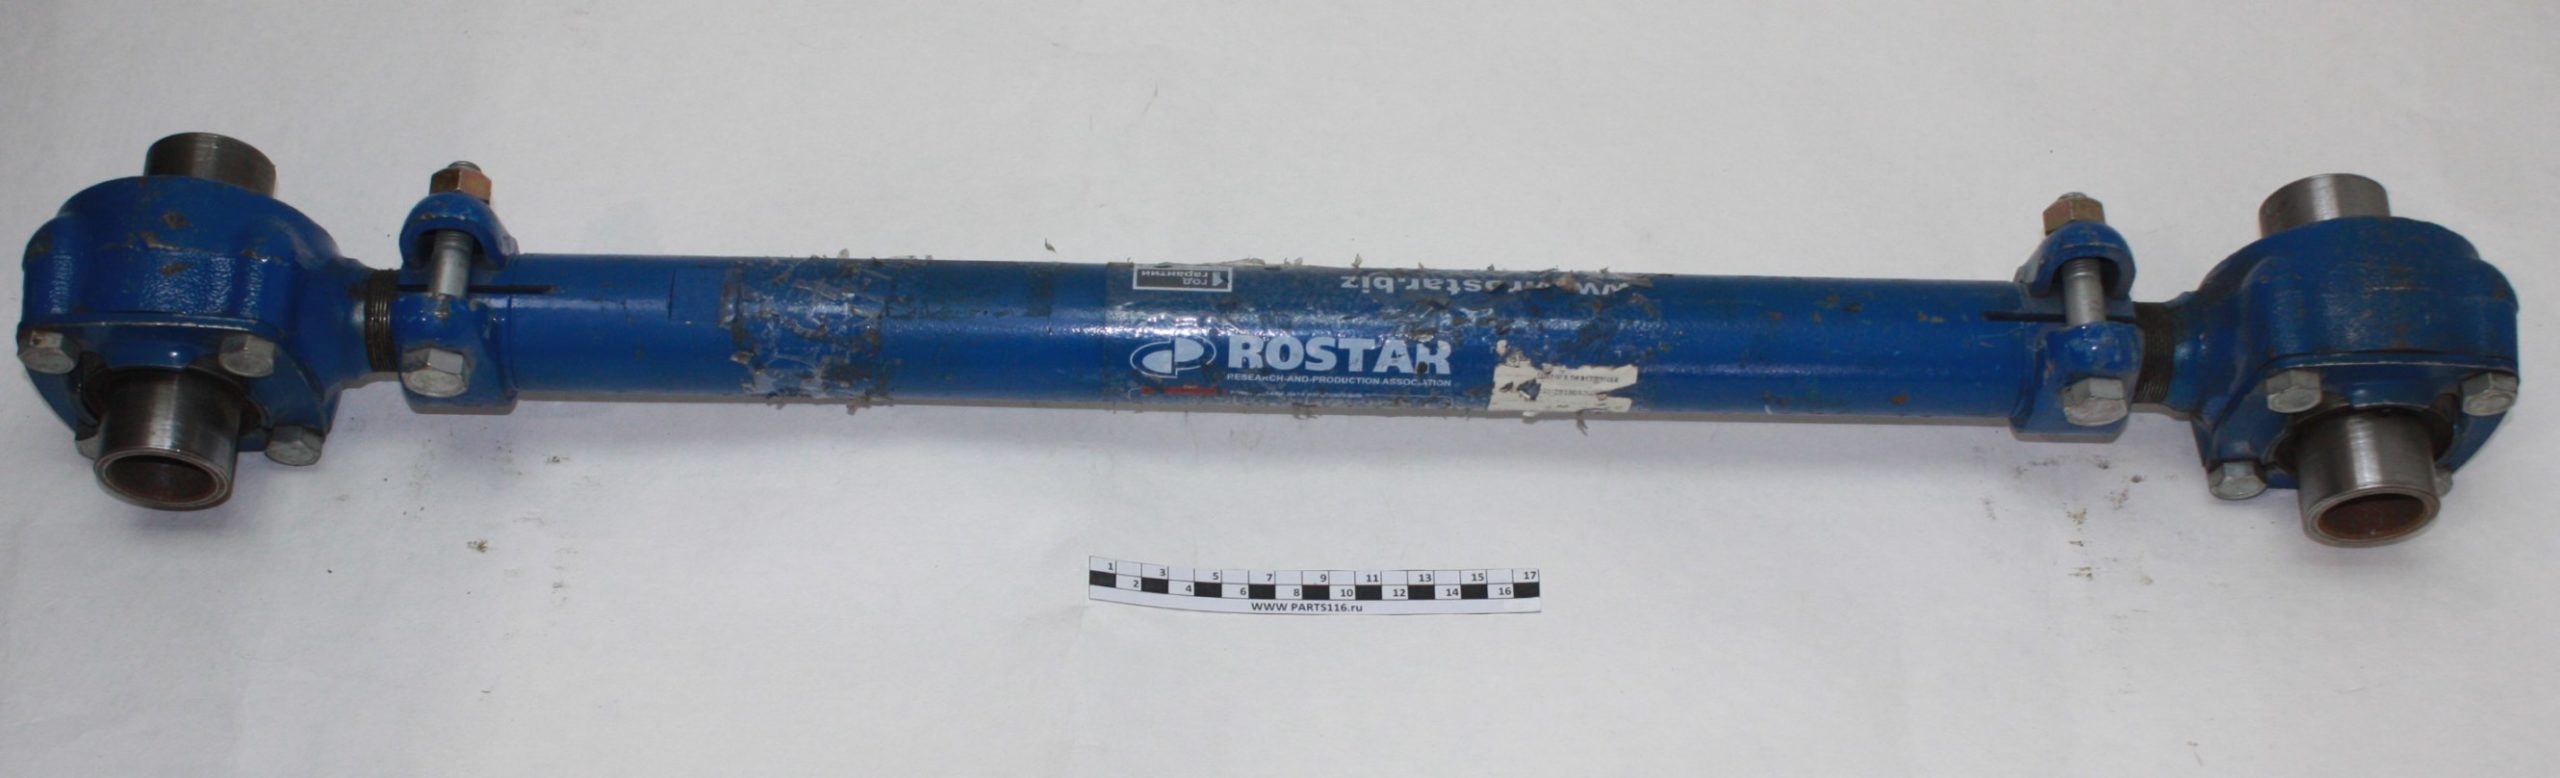 Штанга (обжимная с трубчатым РМШ) L=800мм Волжанин ROSTAR (641-2919010-05)